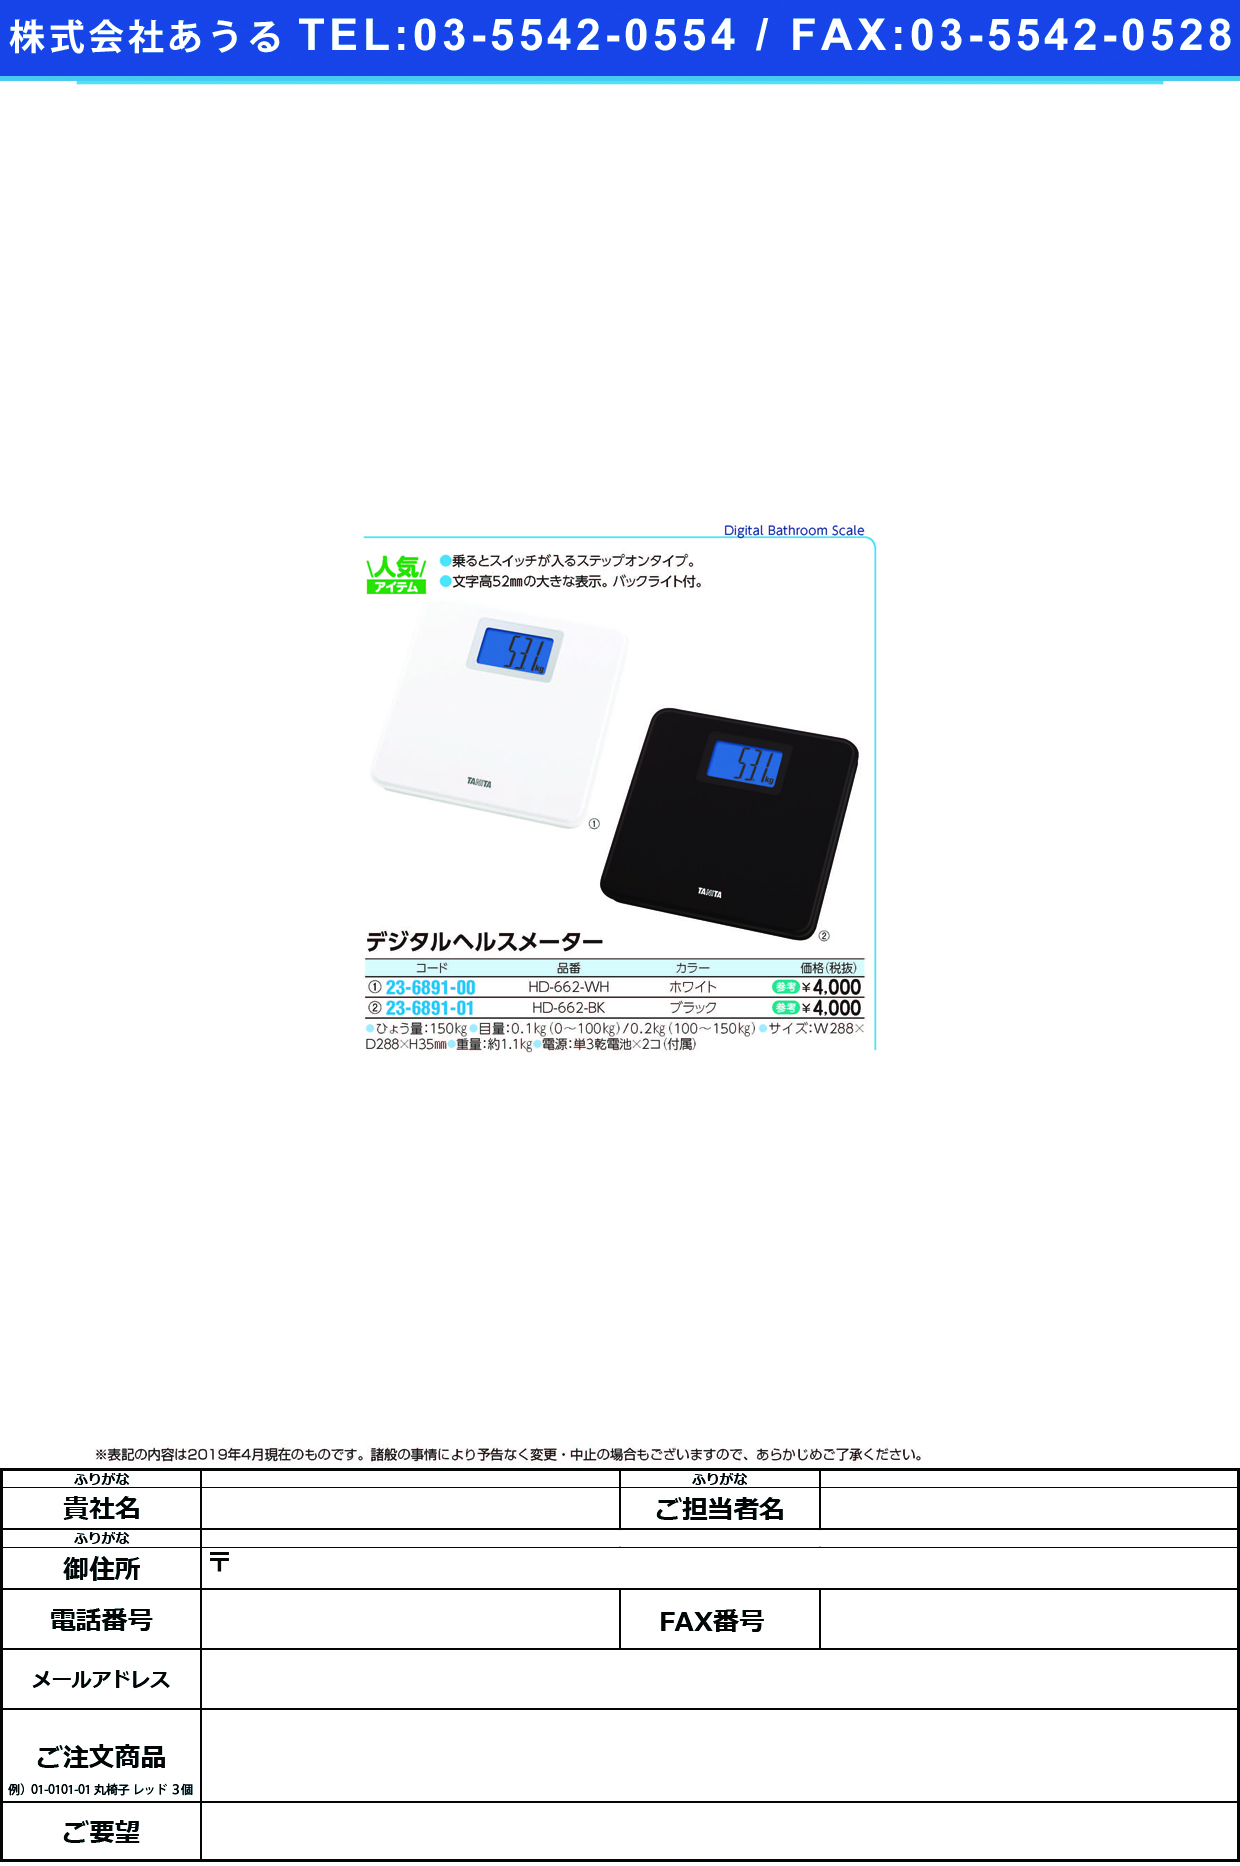 (23-6891-01)デジタルヘルスメーター HD-662(ﾌﾞﾗｯｸ) ﾃﾞｼﾞﾀﾙﾍﾙｽﾒｰﾀｰ(タニタ)【1台単位】【2019年カタログ商品】